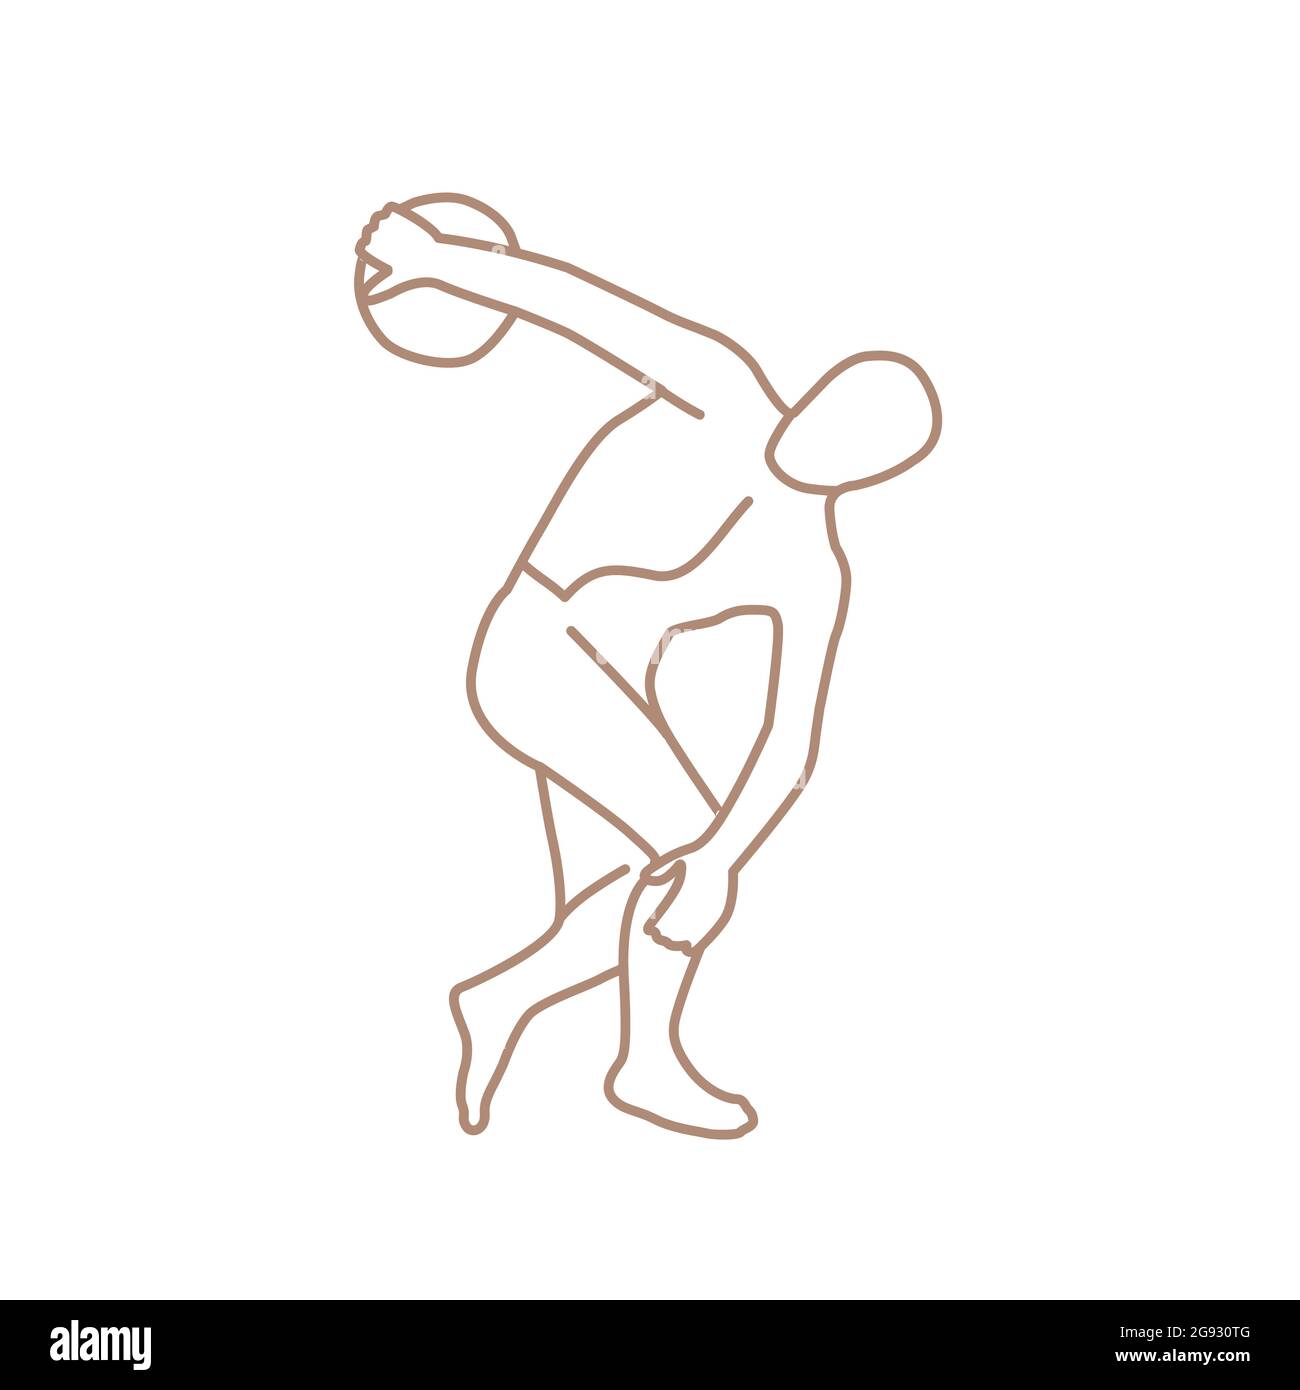 Discobolus de Myron sculpture grecque en bronze doodle d'époque classique Illustration de Vecteur